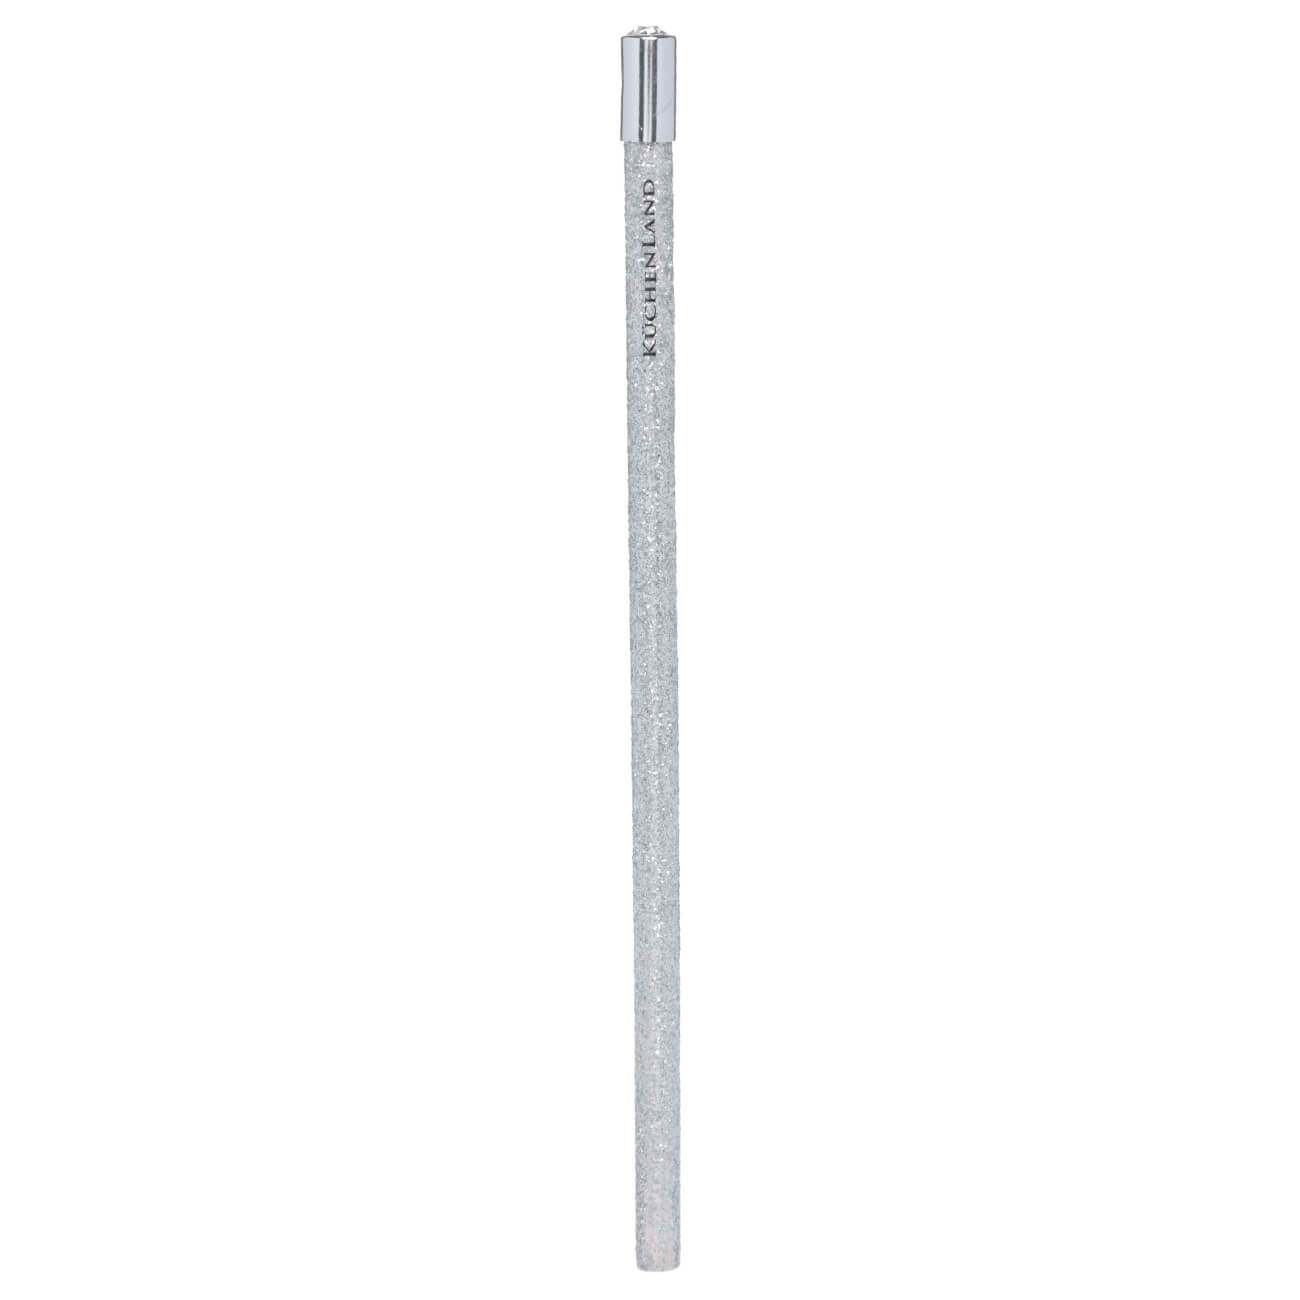 Карандаш, 18 см, чернографитный, серебристый, Draw sparcle карандаш чернографитный stabilo easygraph для левшей hв